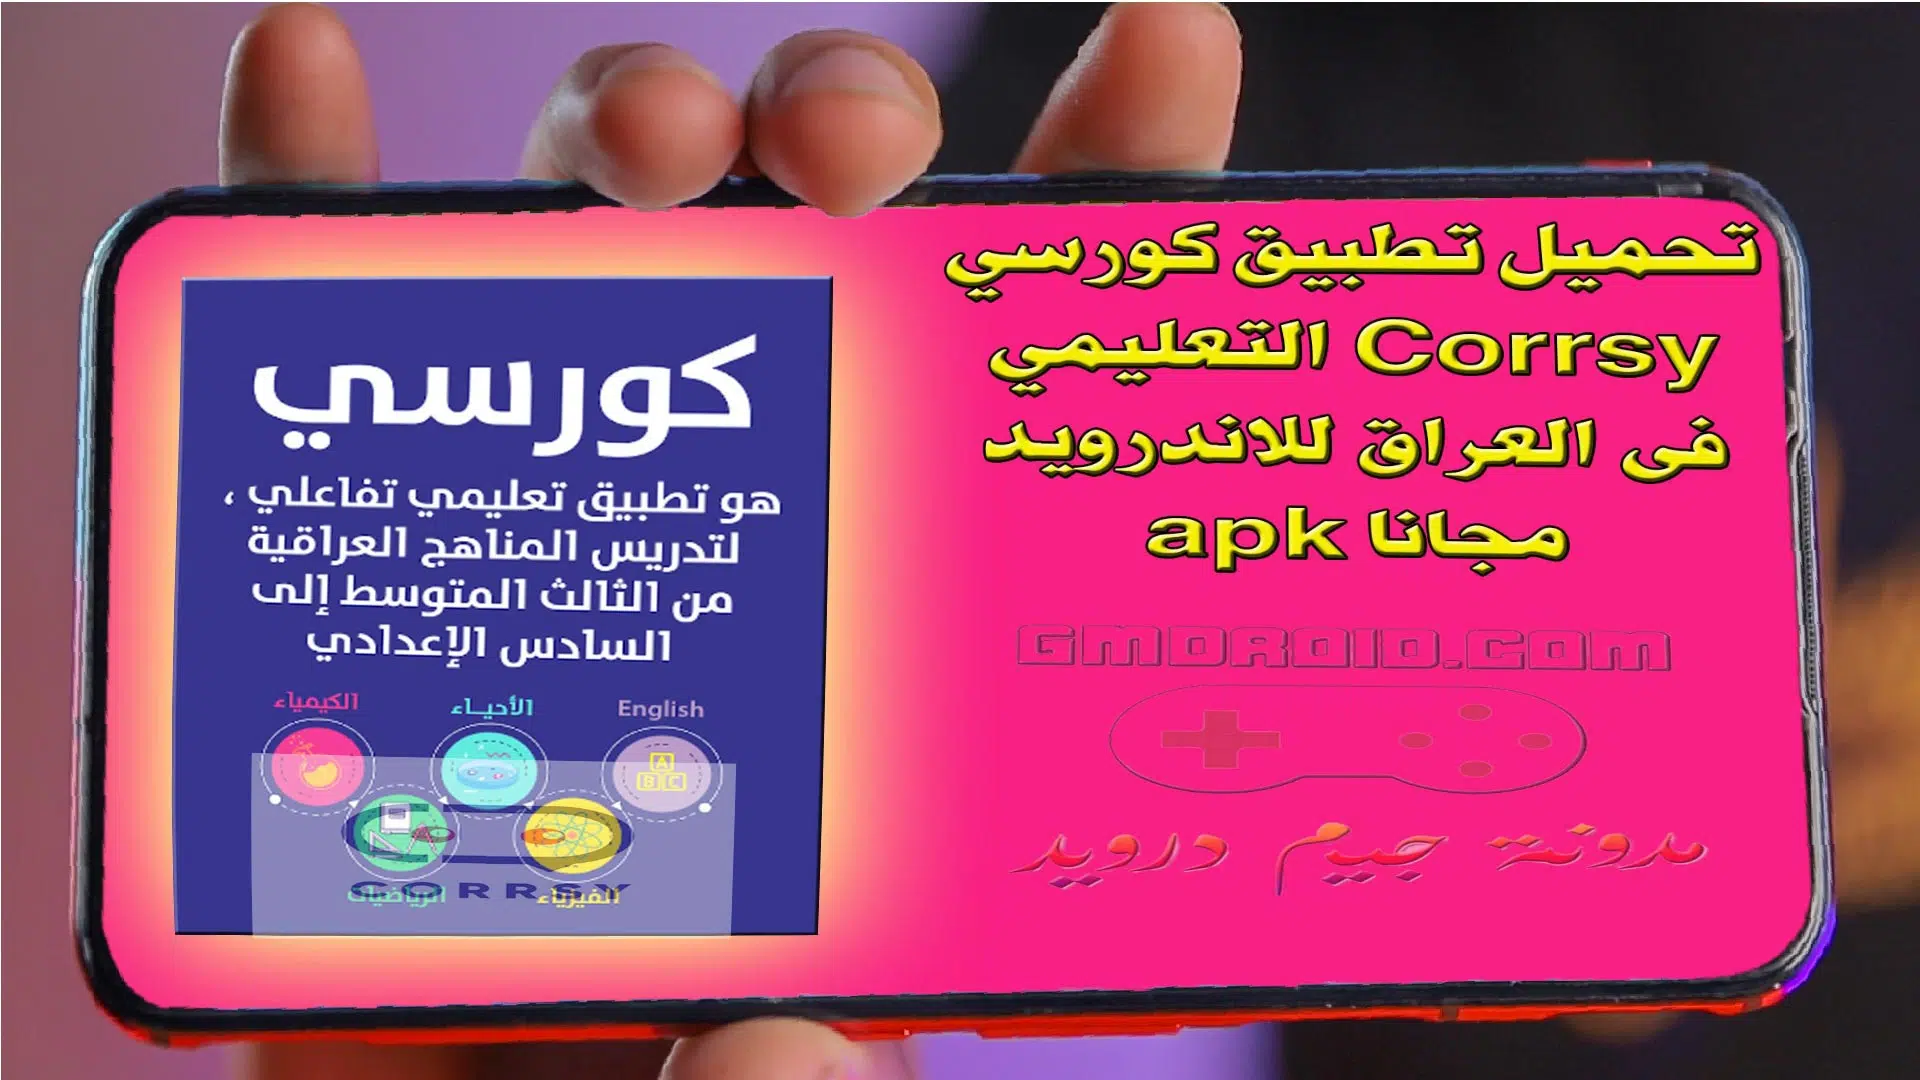 تحميل تطبيق كورسي Corrsy التعليمي فى العراق للاندرويد مجانا apk